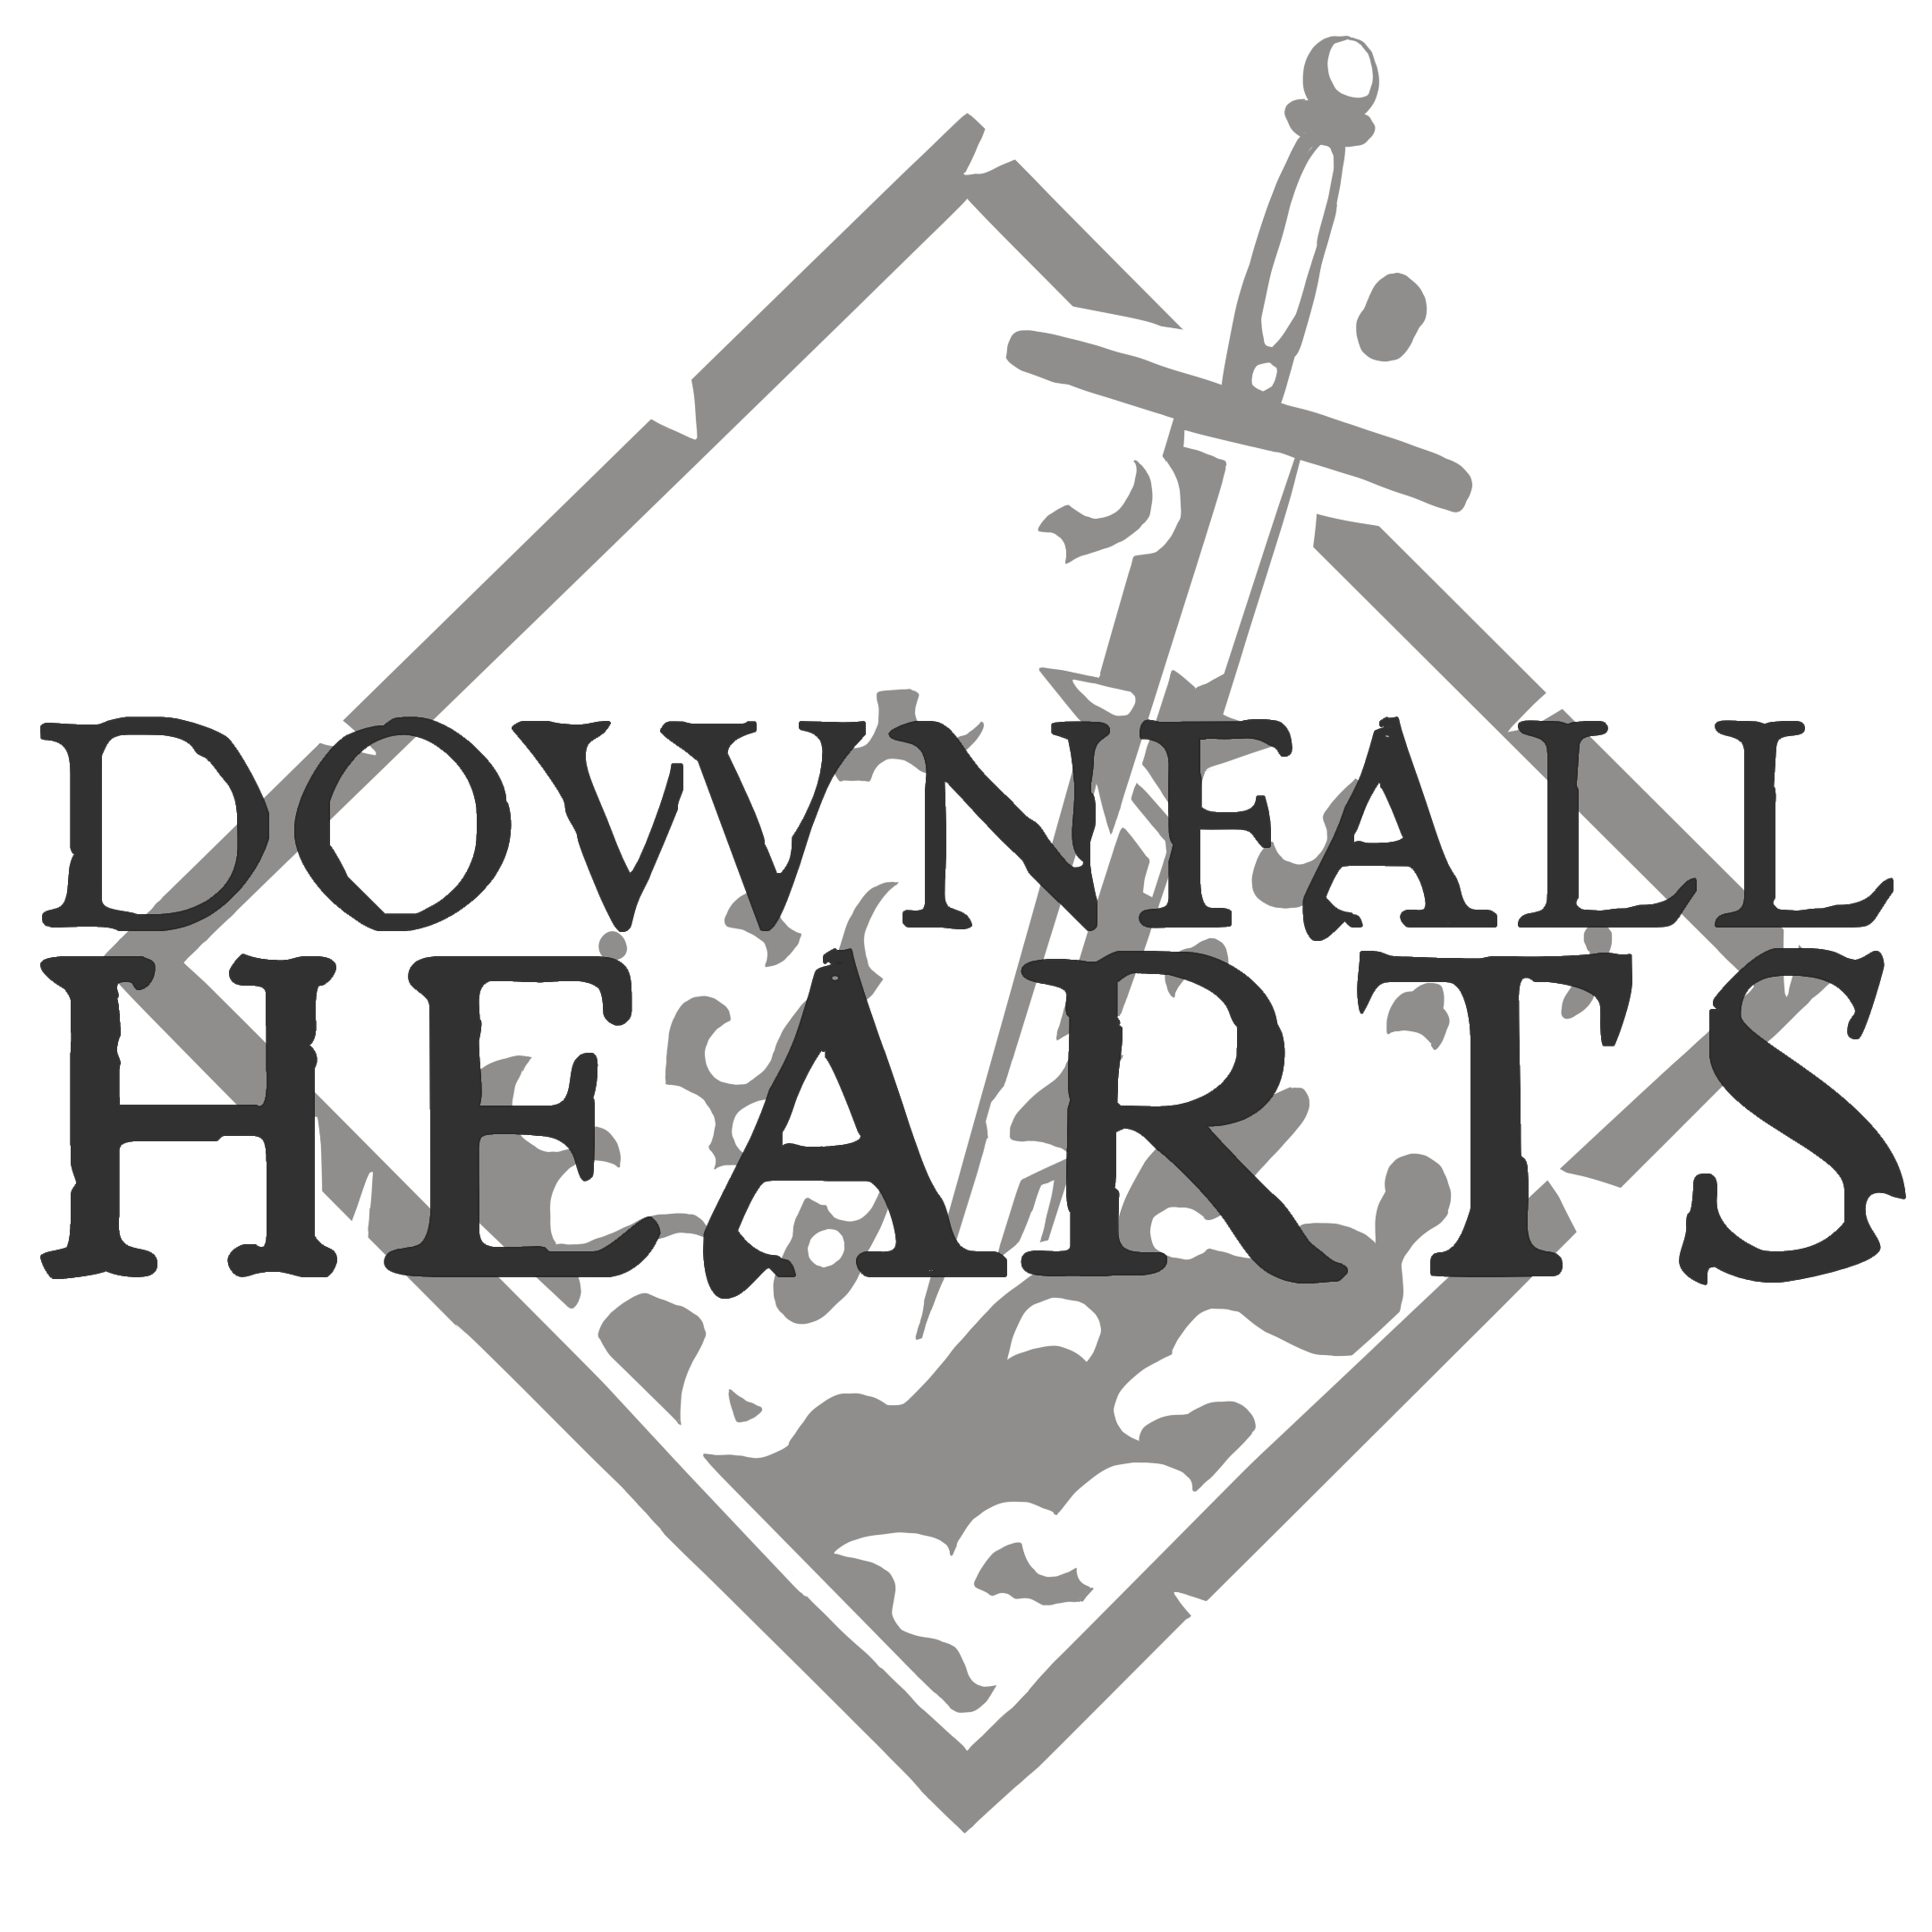 Logo: Downfall Hearts